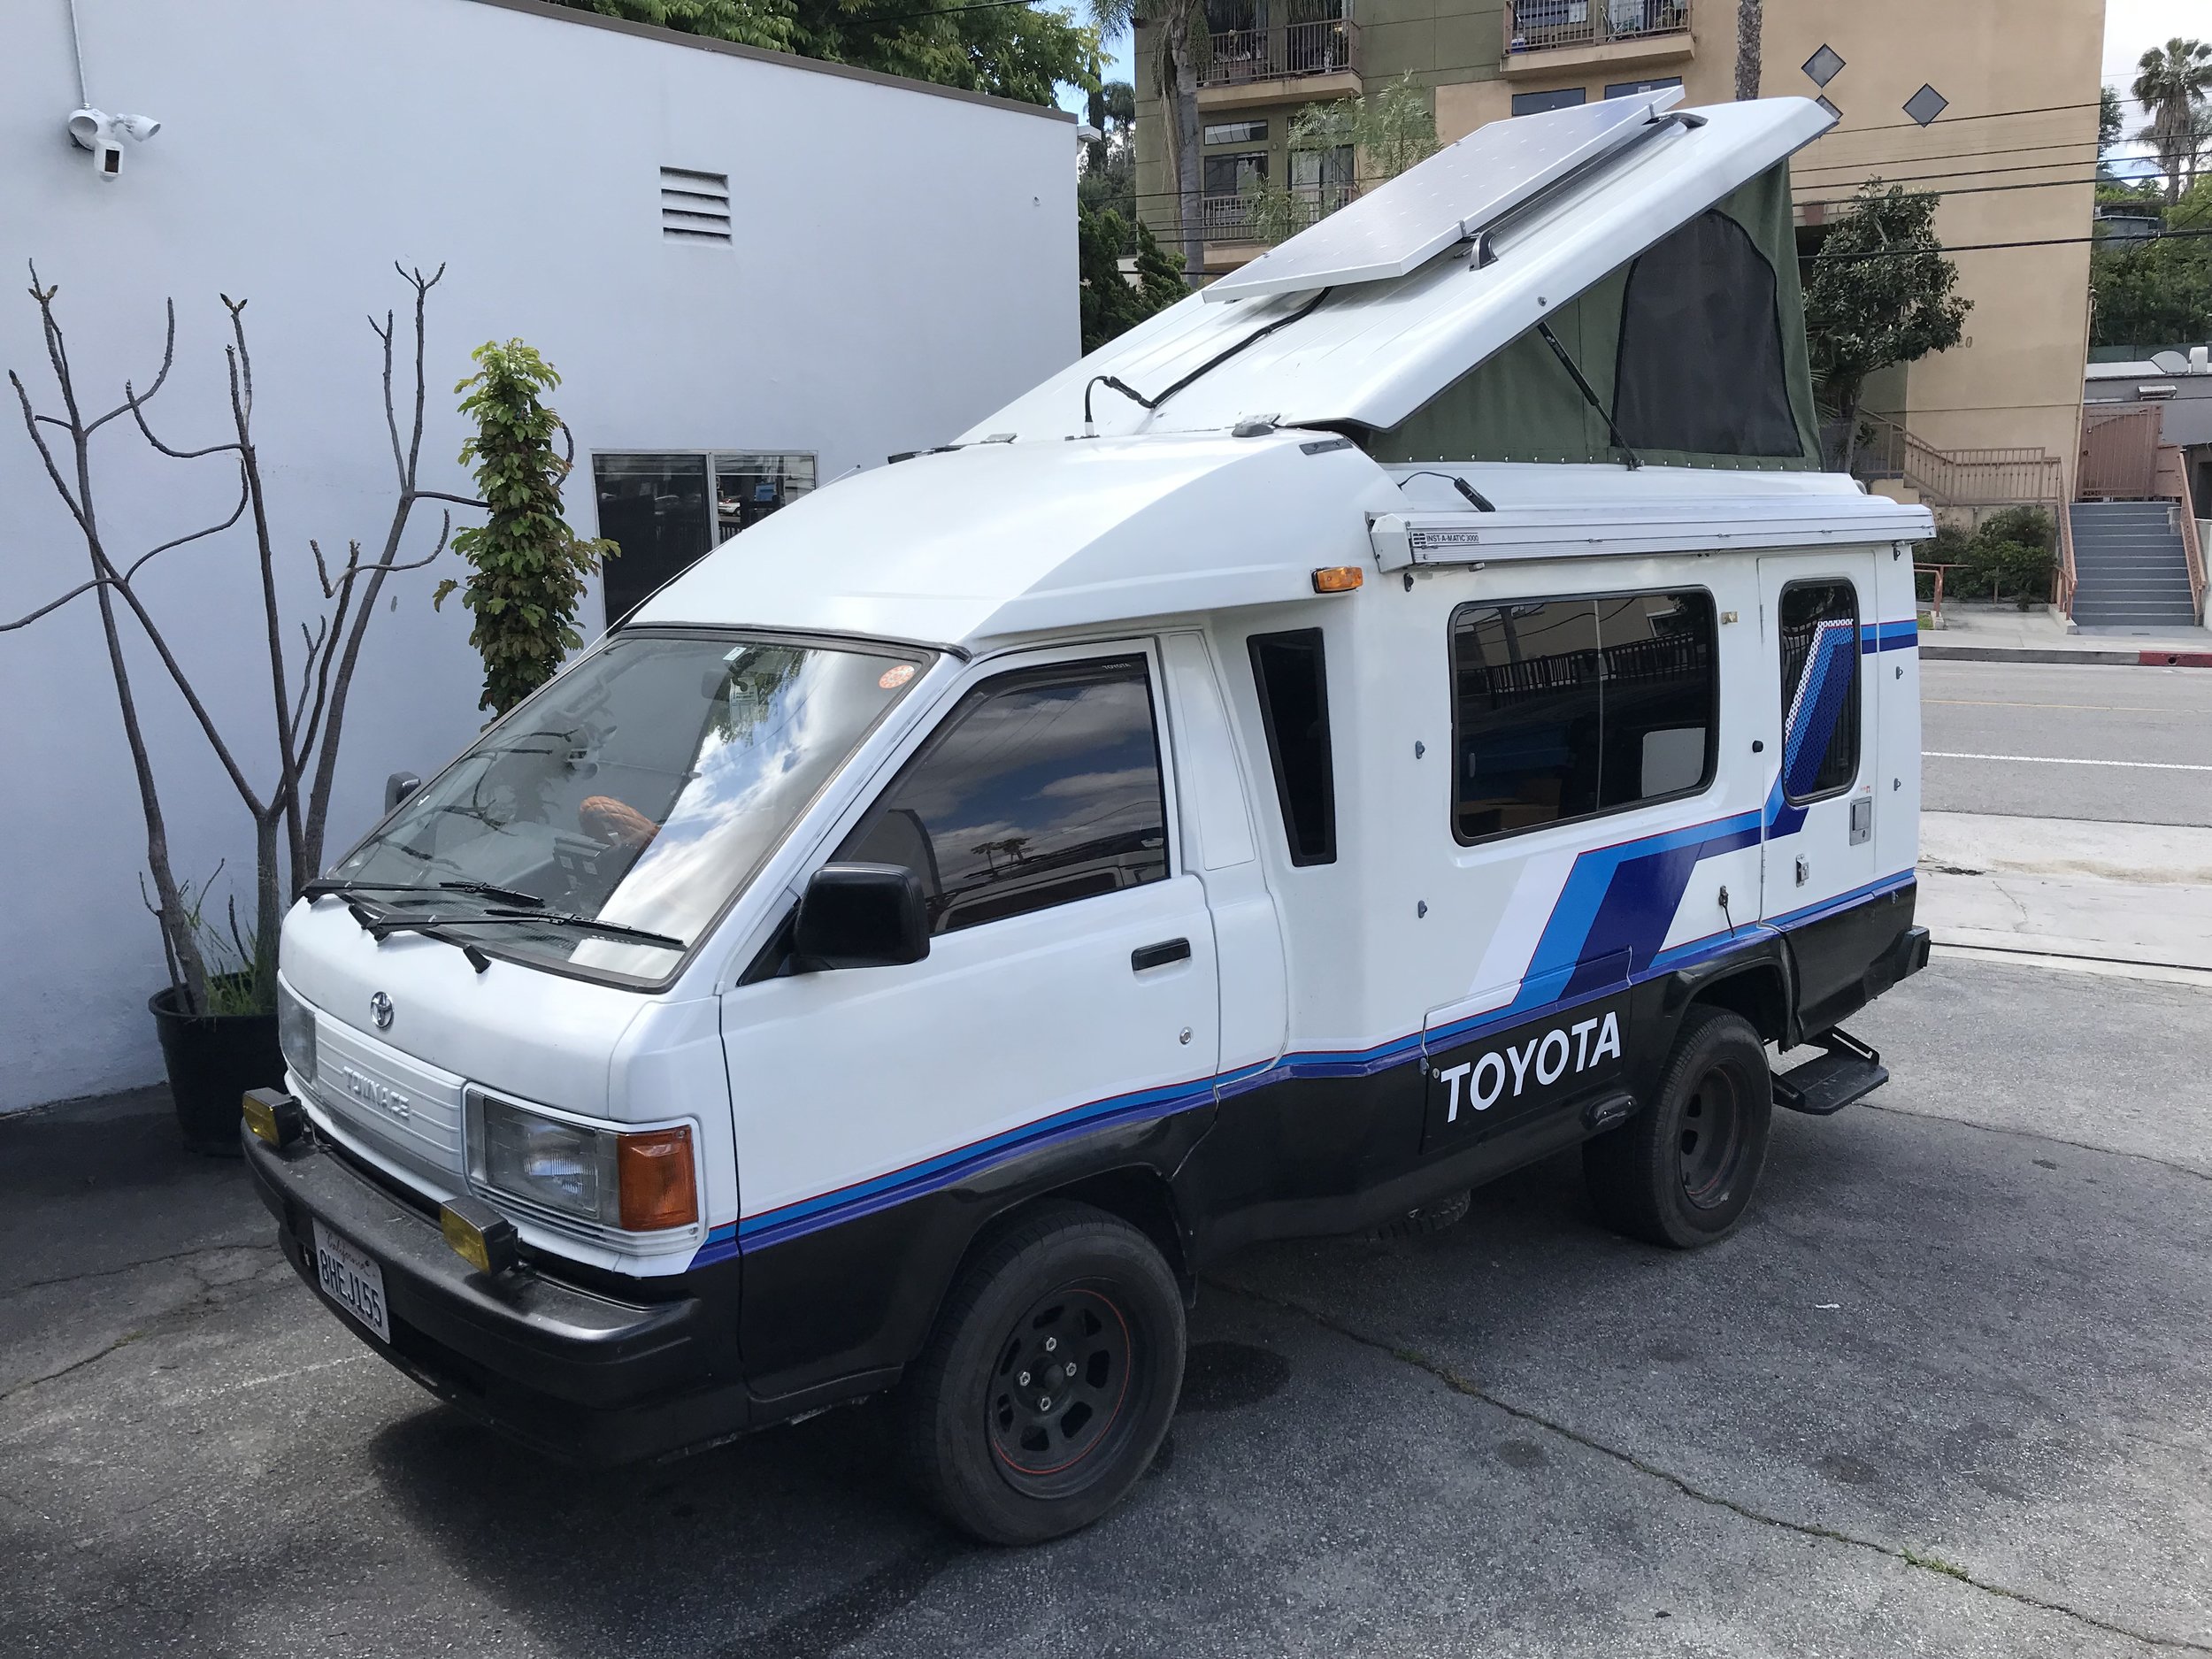 Toyota Townace Camper — JDM Vans For 